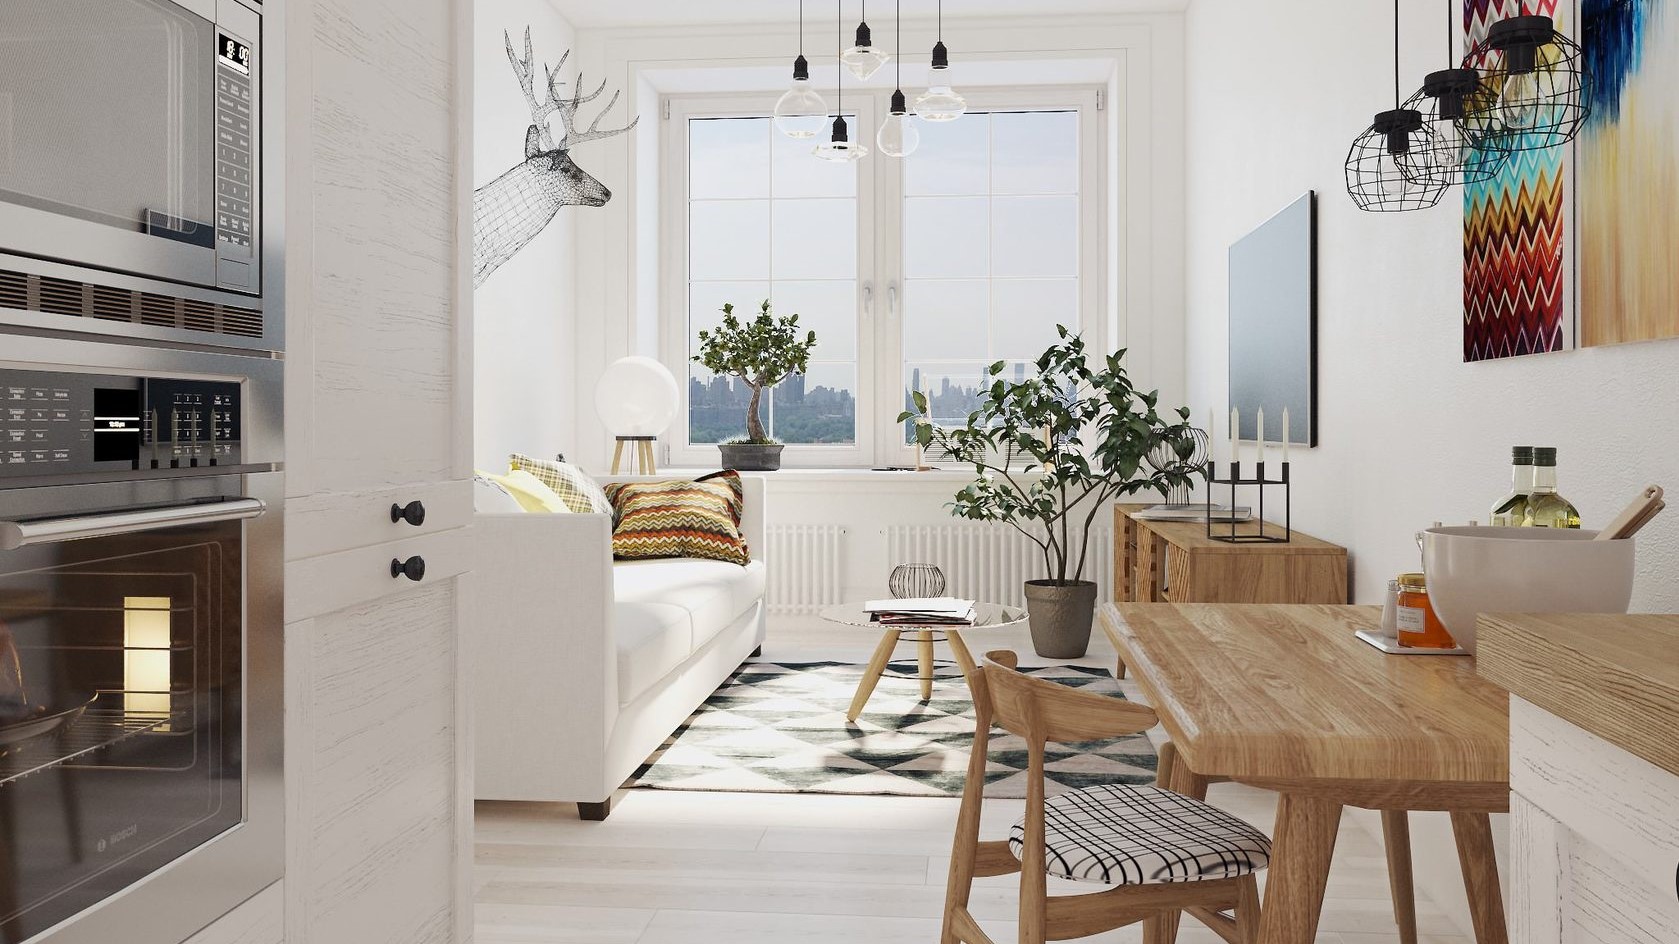 Скандинавский стиль в интерьере малогабаритных квартир малобюджетный вариант фото